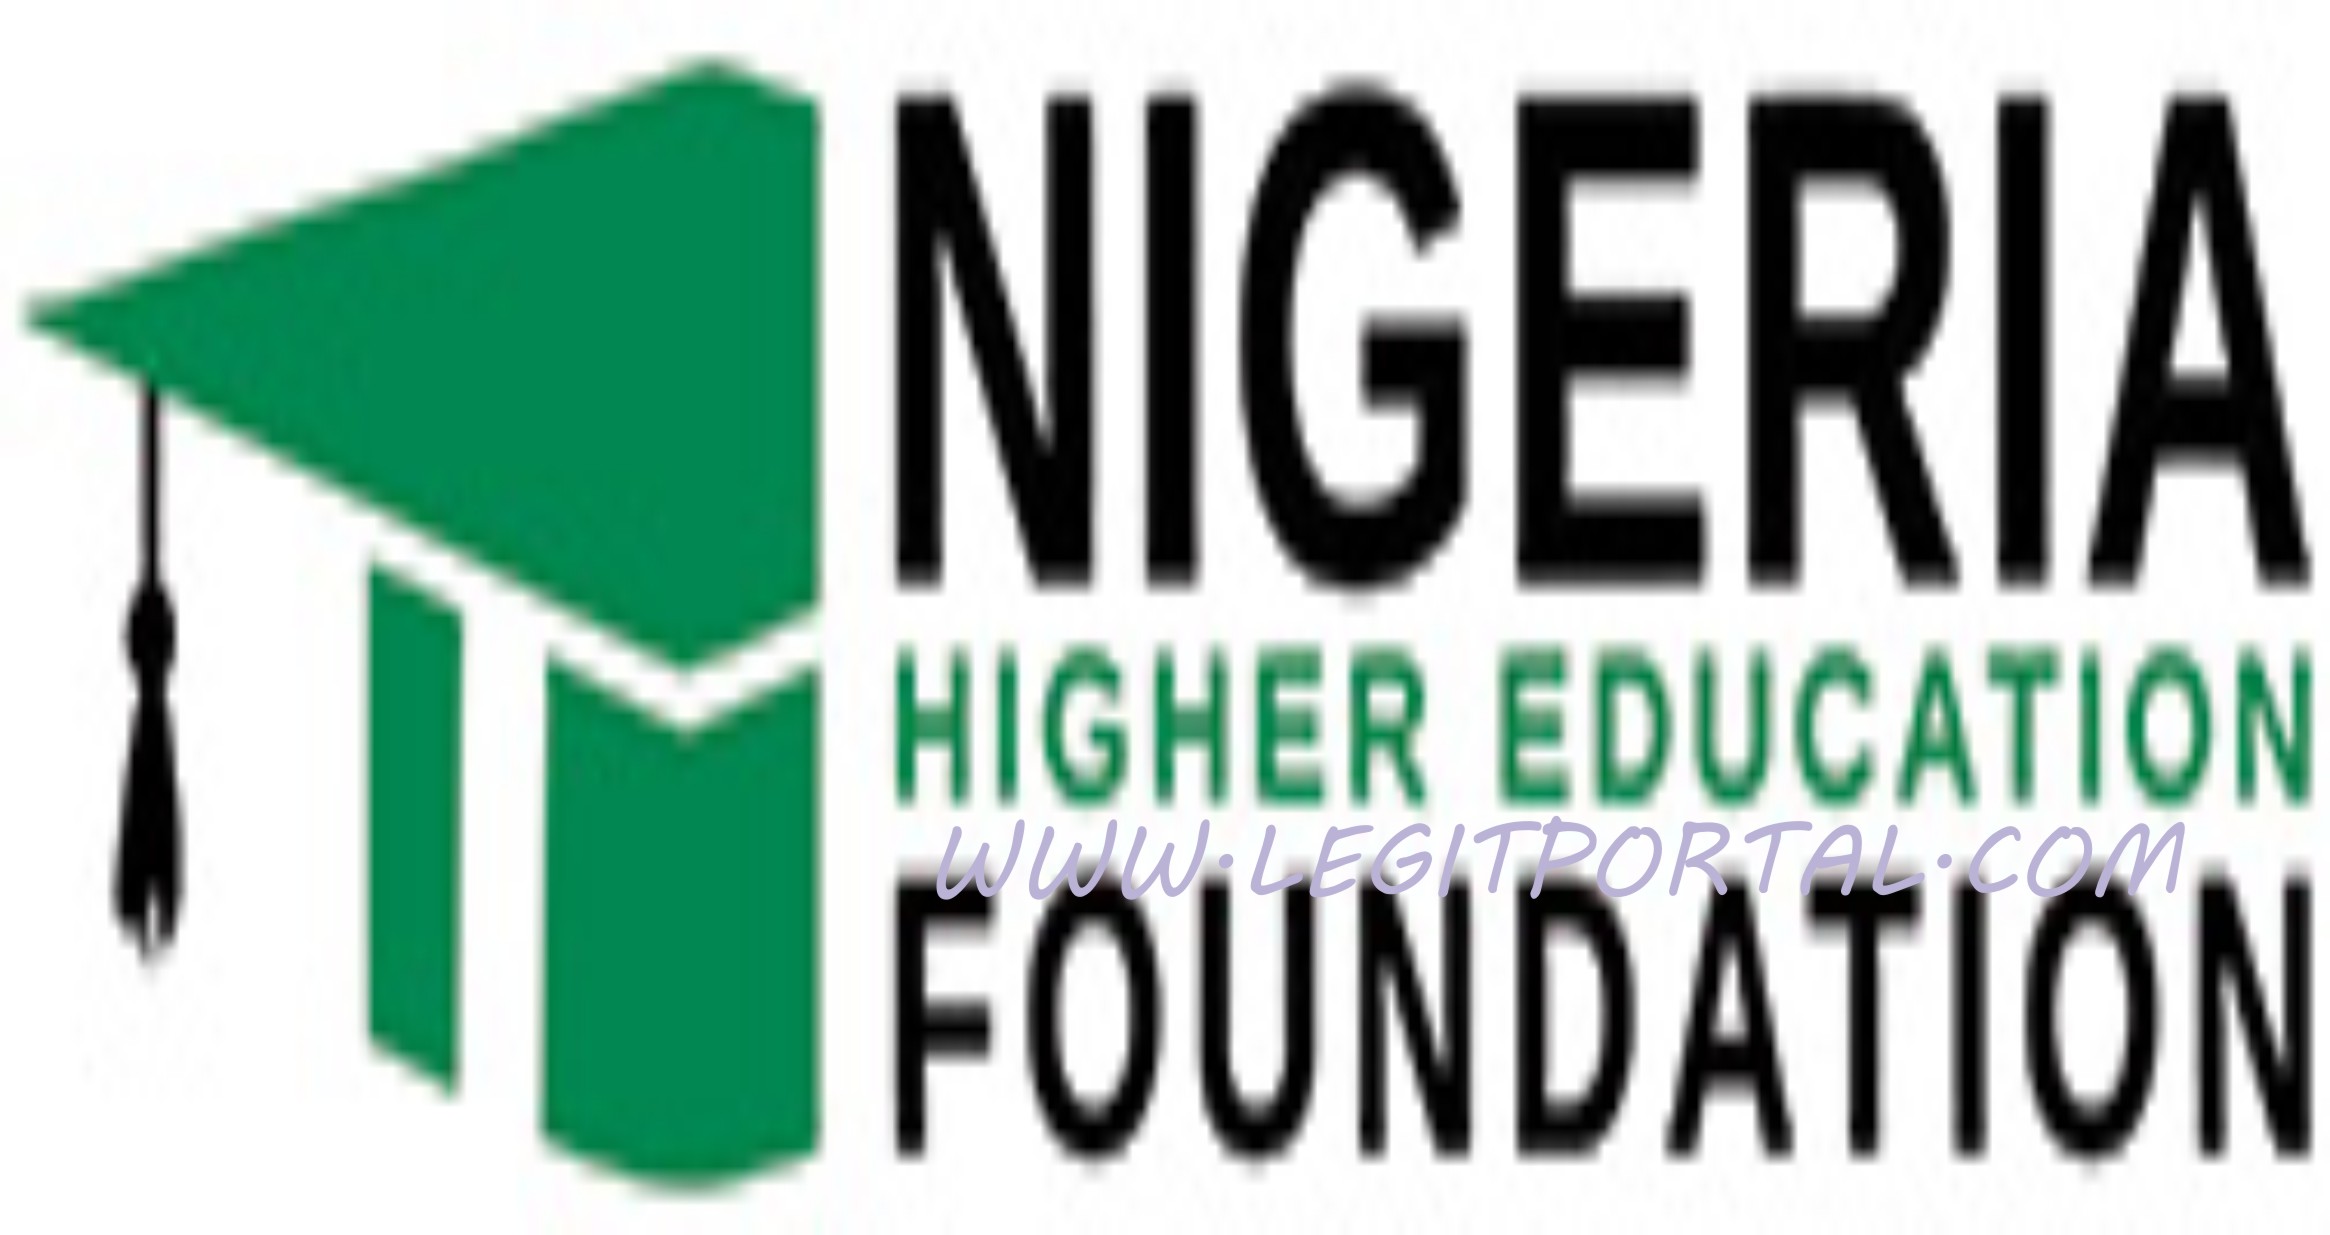 Nigerian Higher Education Foundation NHEF